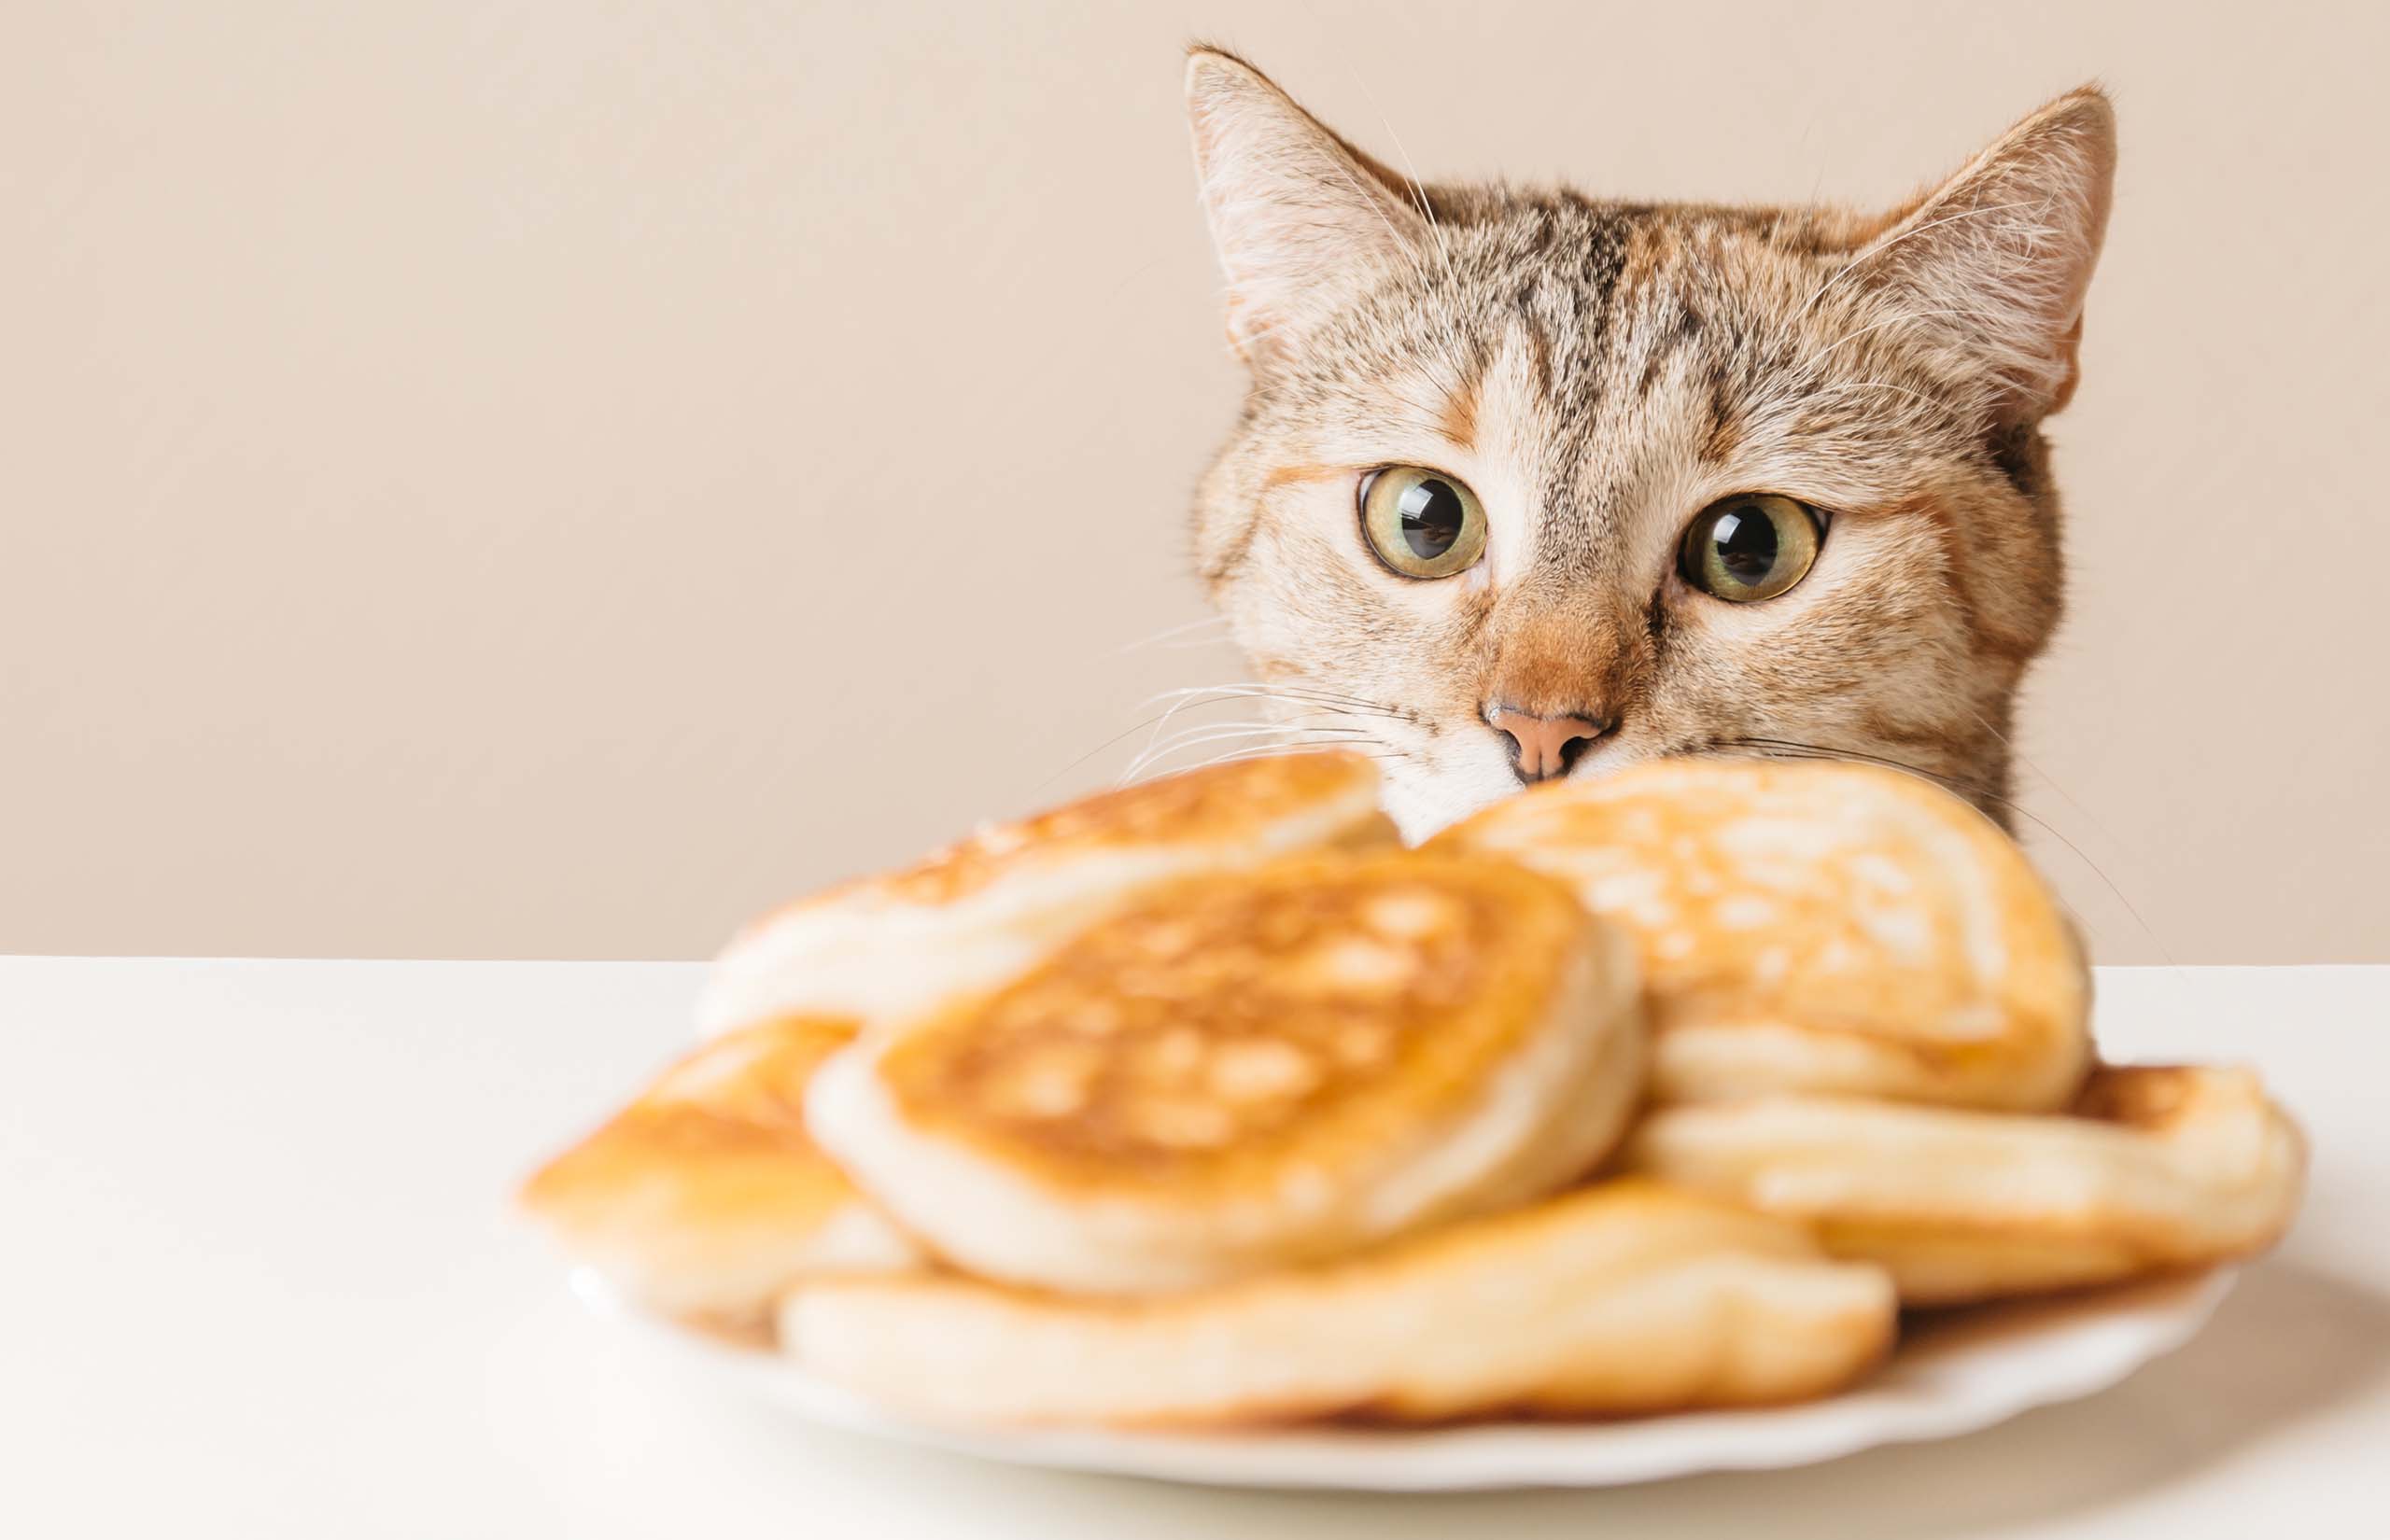 10 Lebensmittel, die nur für den menschlichen Verzehr geeignet sind und die für Katzen gefährlich sind